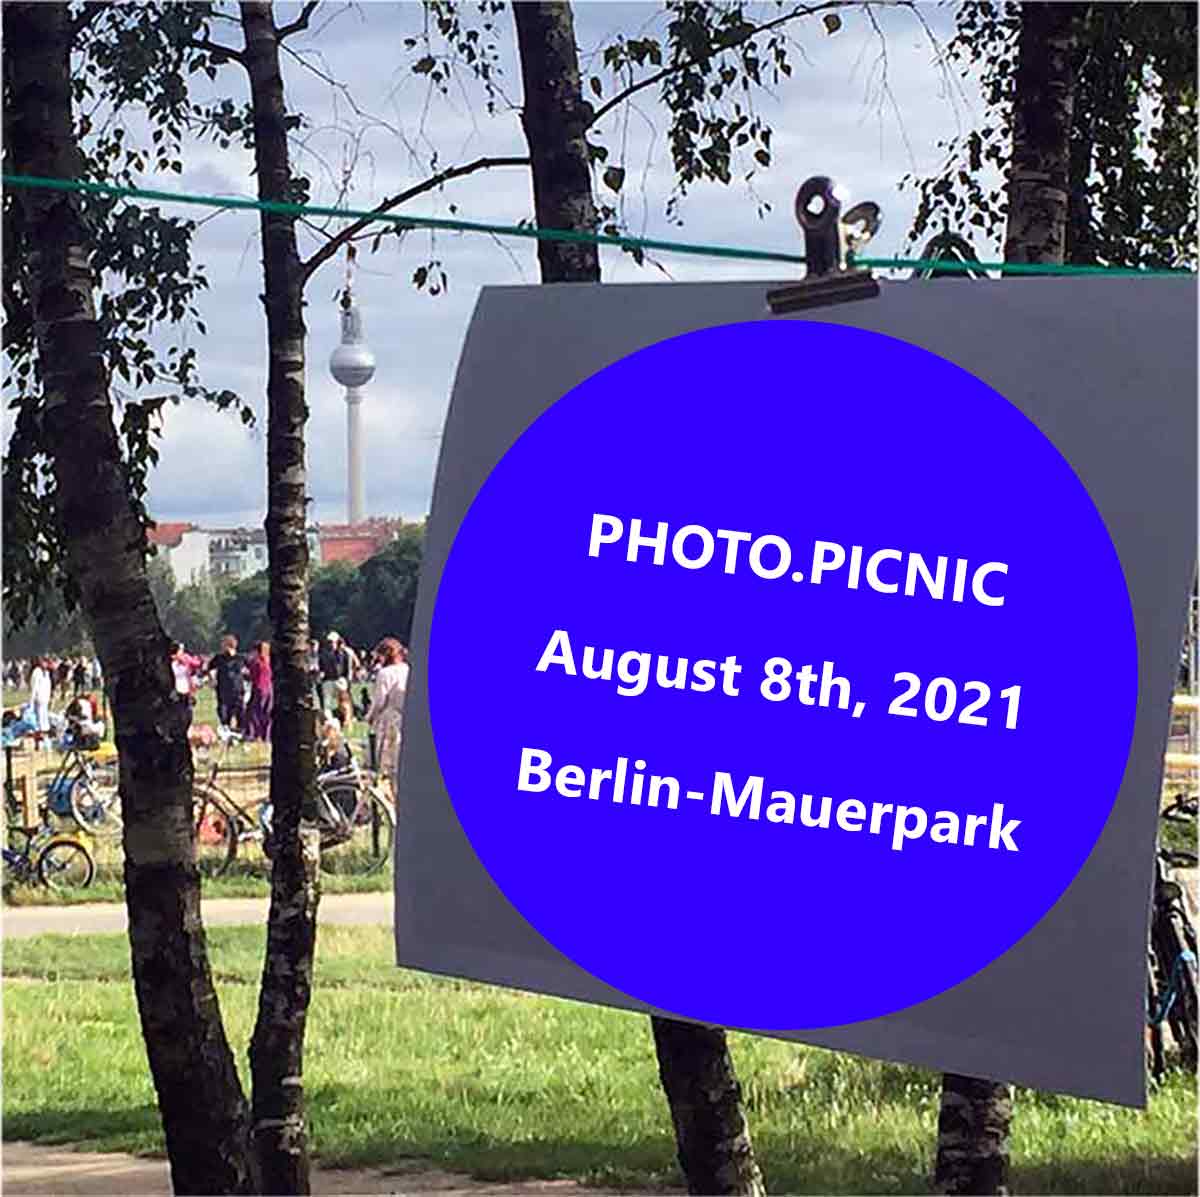 “PHOTO.PICNIC 2021” at 08.08.2021